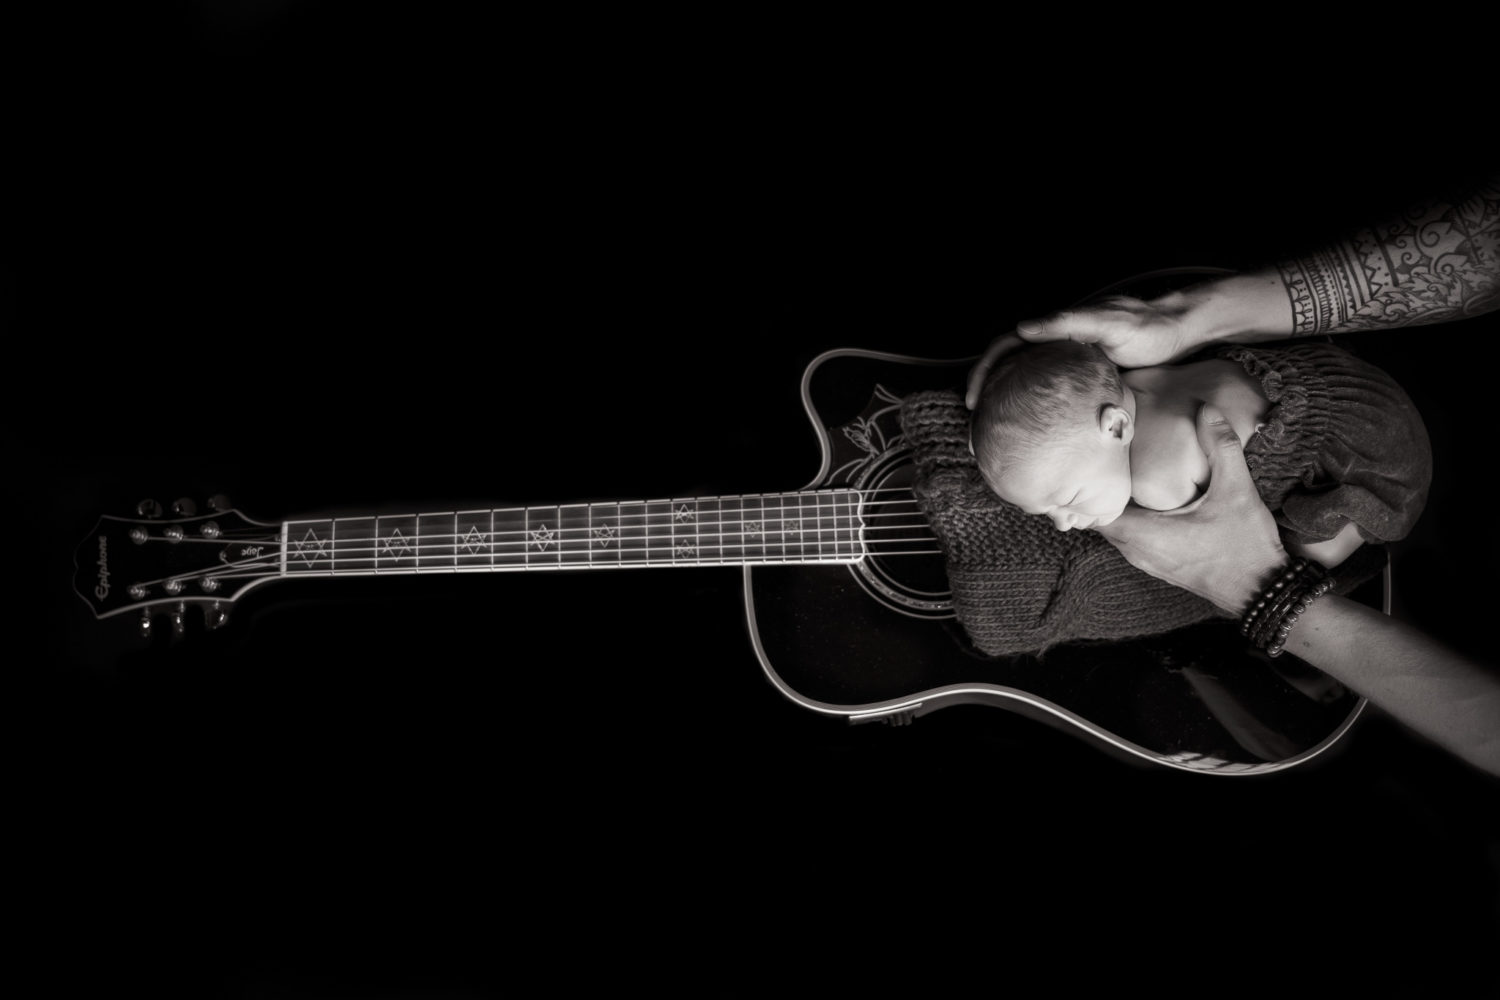 Traumkind Fotos Essen Newbornshooting scaled - Babyfotos